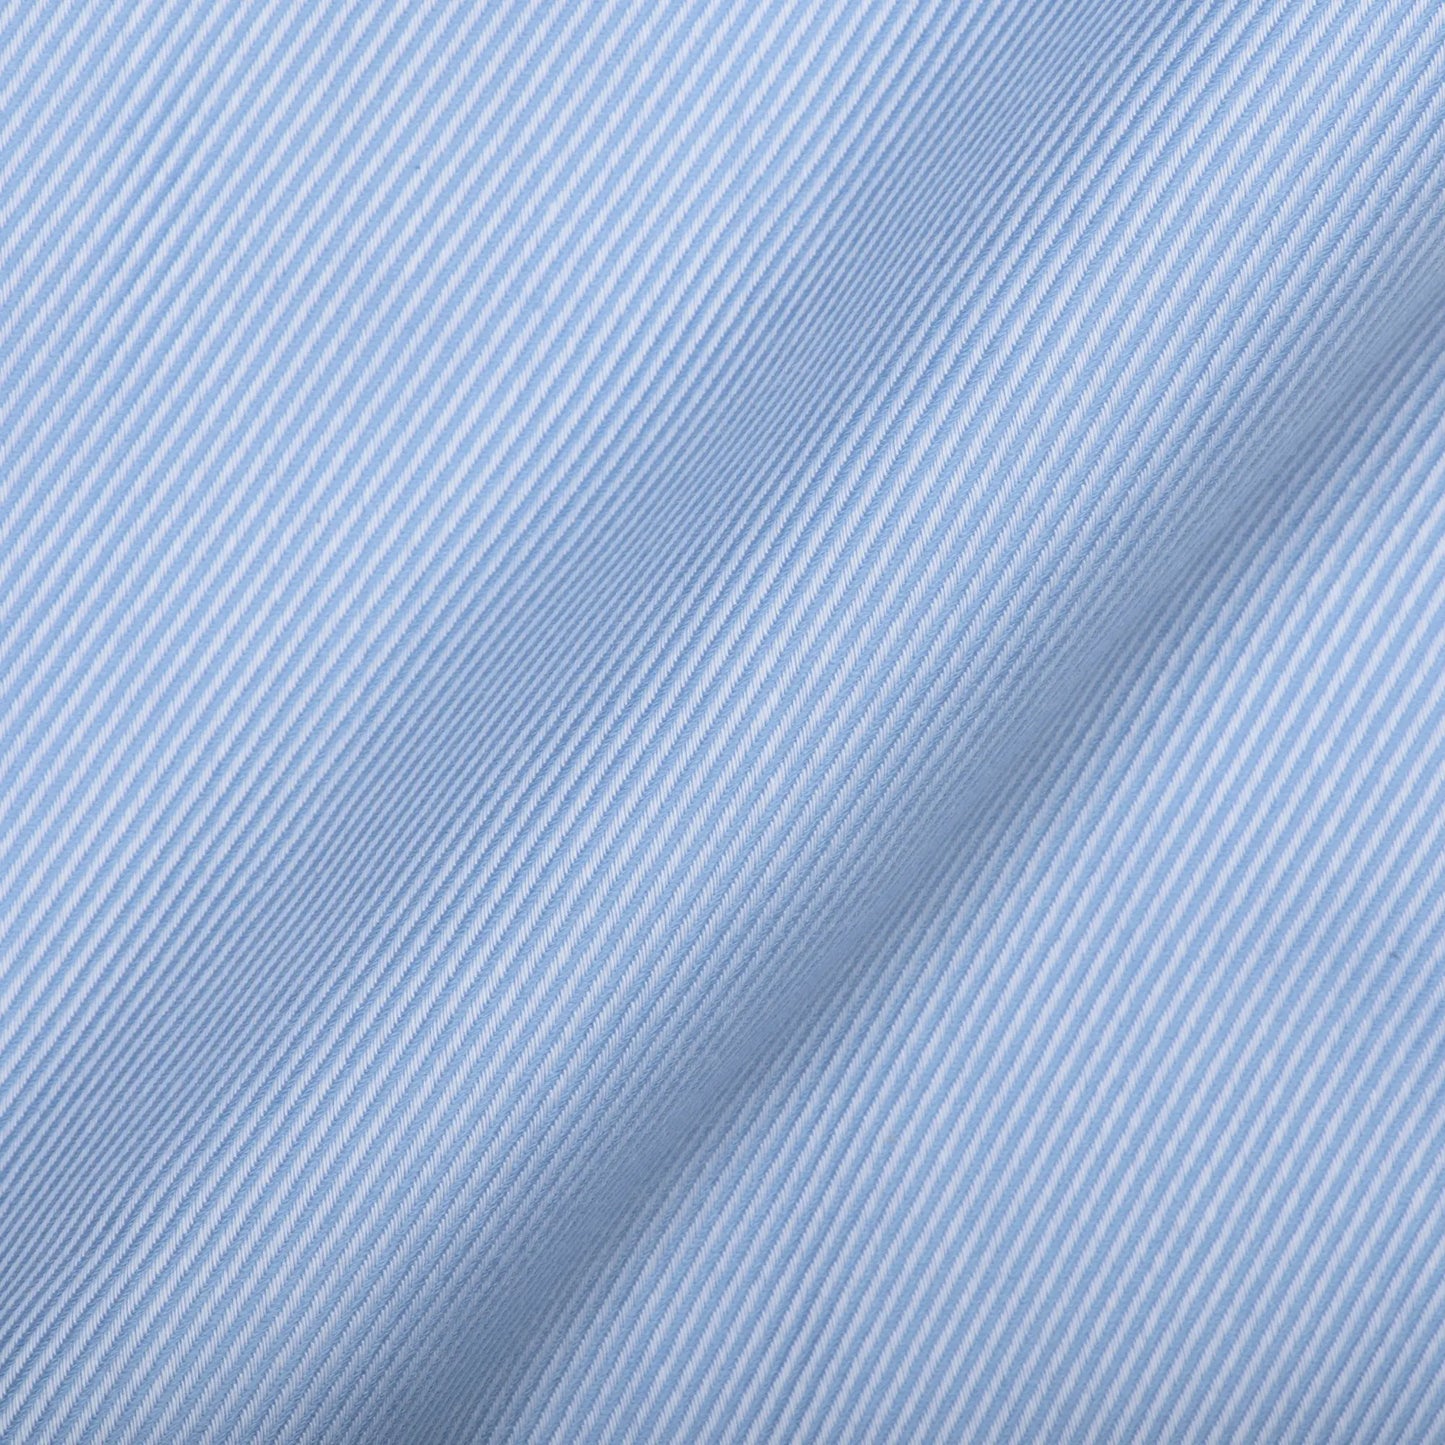 Royal Blue Twill Fabric